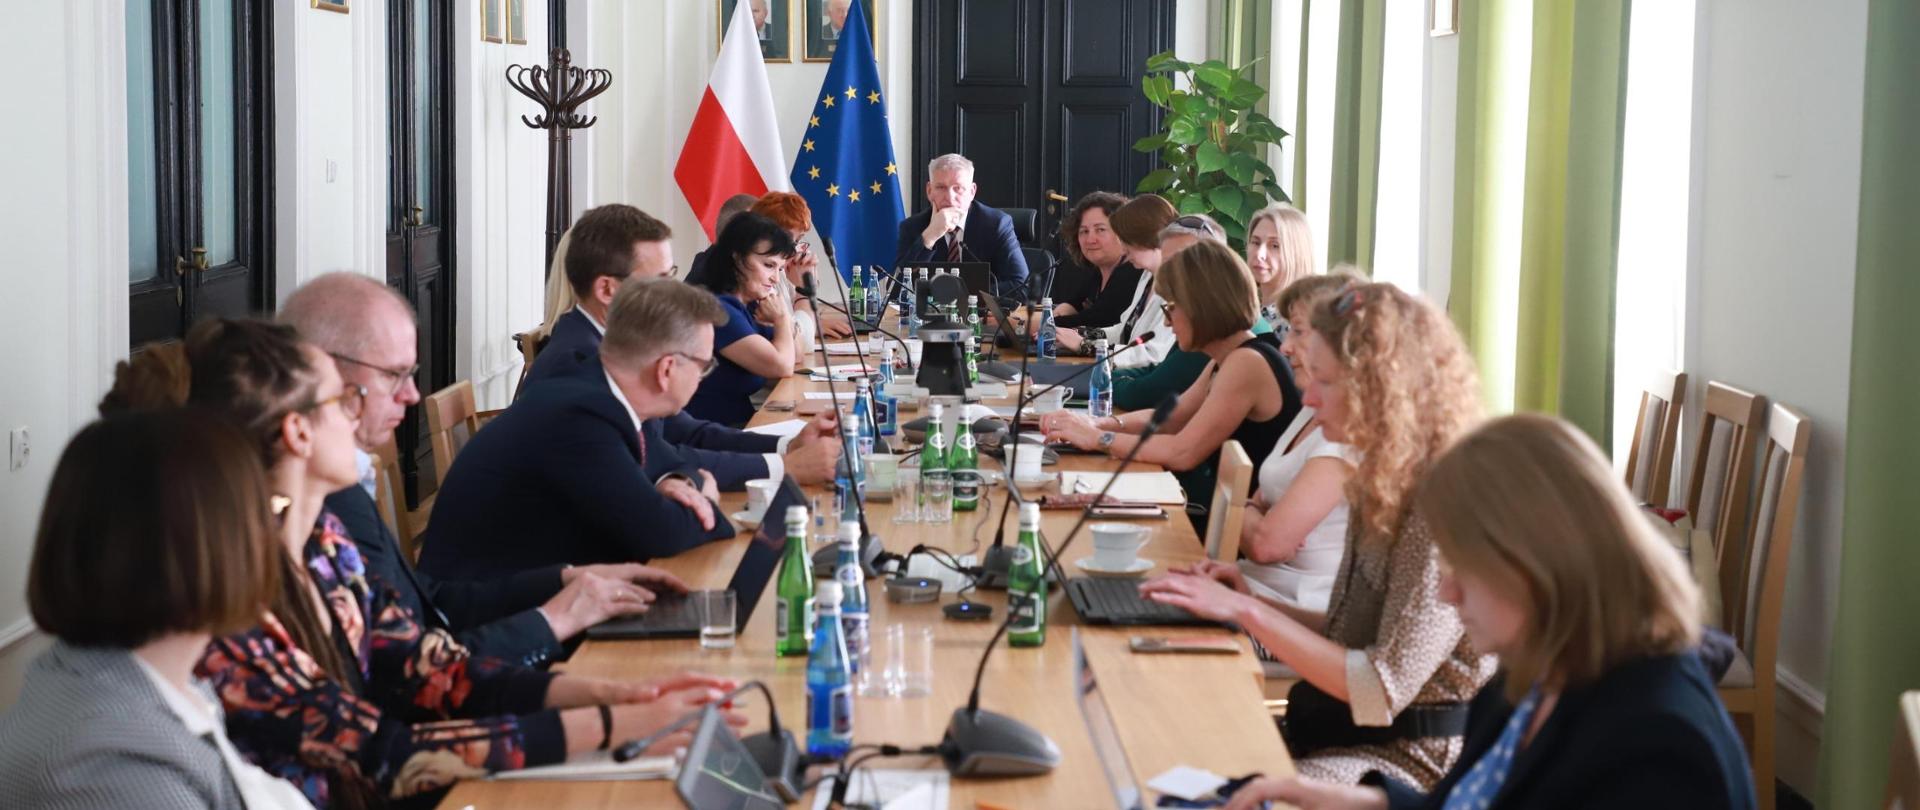 Na zdj. posiedzenie zespołu ds. bezpieczeństwa zdrowotnego kobiet. Prowadzi wiceminister Wojciech Konieczny.